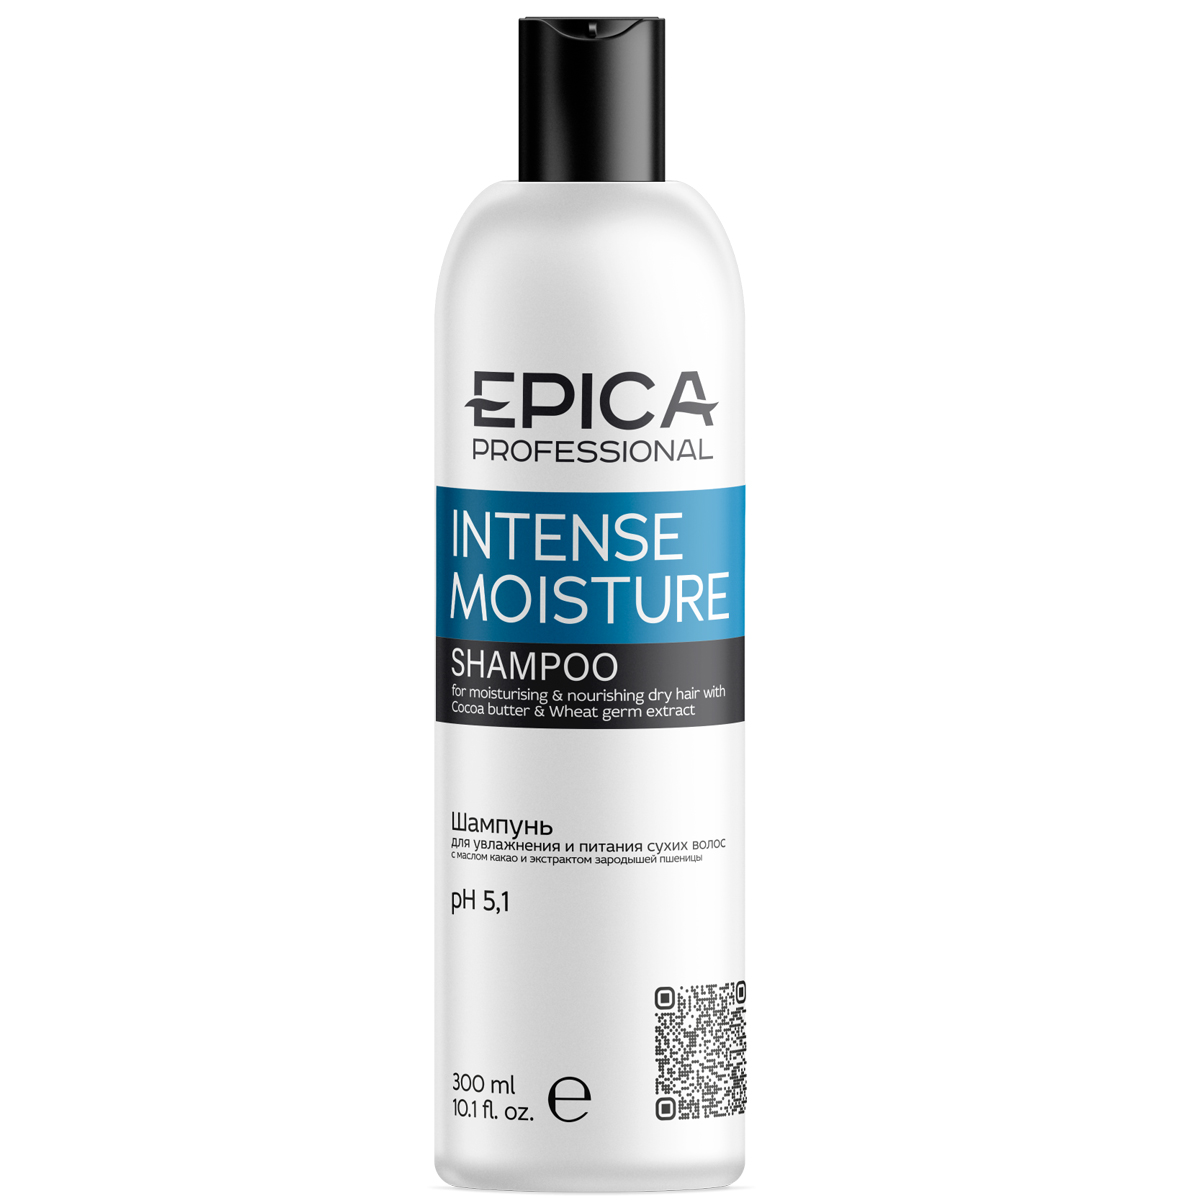 Epica Professional Шампунь c маслом какао и экстрактом зародышей пшеницы для увлажнения и питания сухих волос, 300 мл (Epica Professional, Intense Moisture)